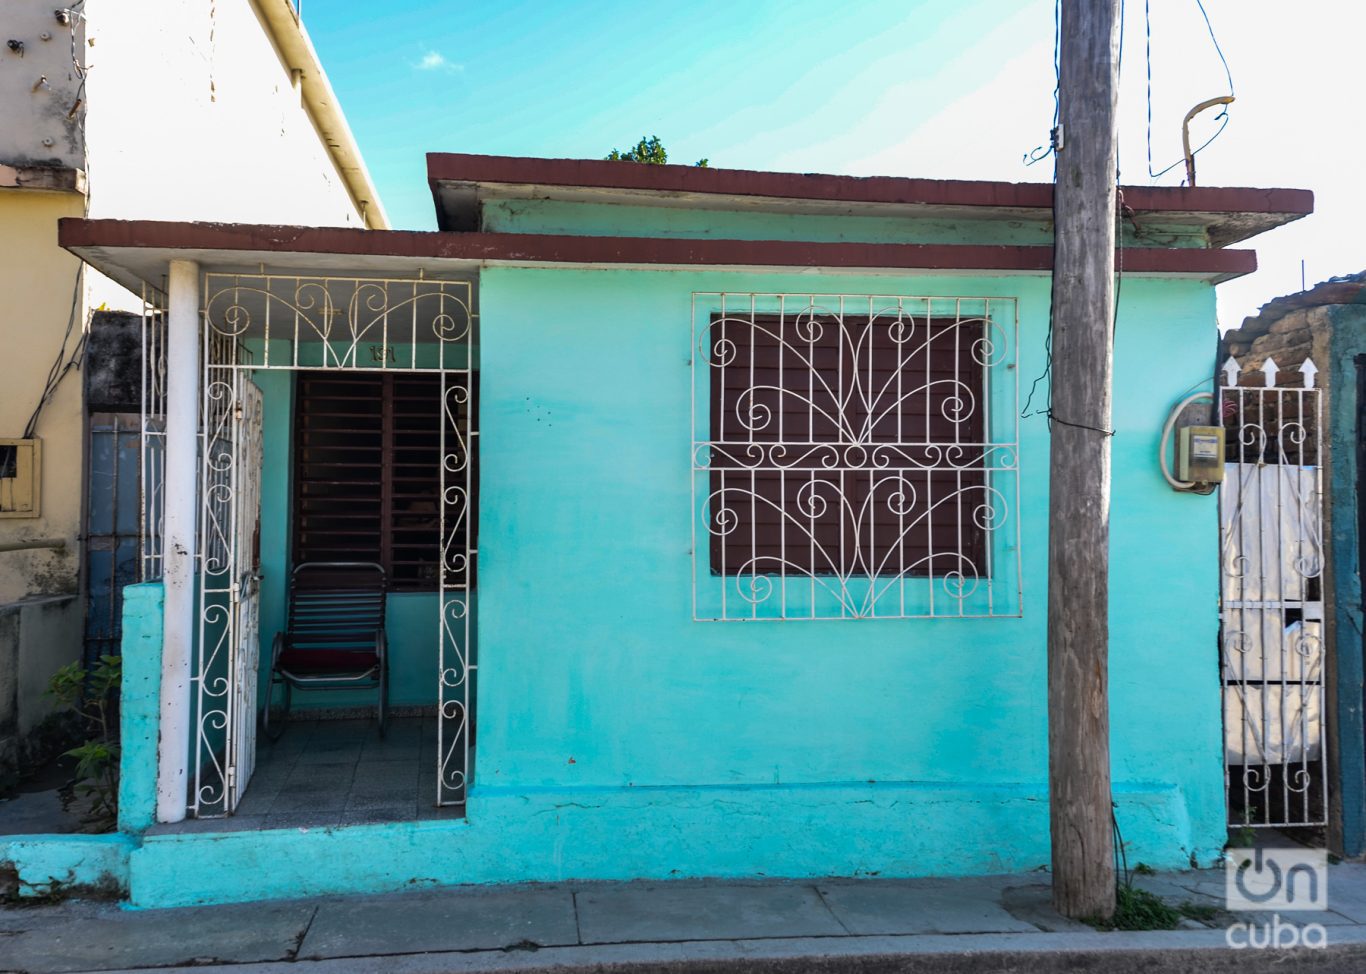 La casa de la calle Agramonte número 191 y el poste de la electricidad donde contabamos como base de las escondidas. Foto: Kaloian.